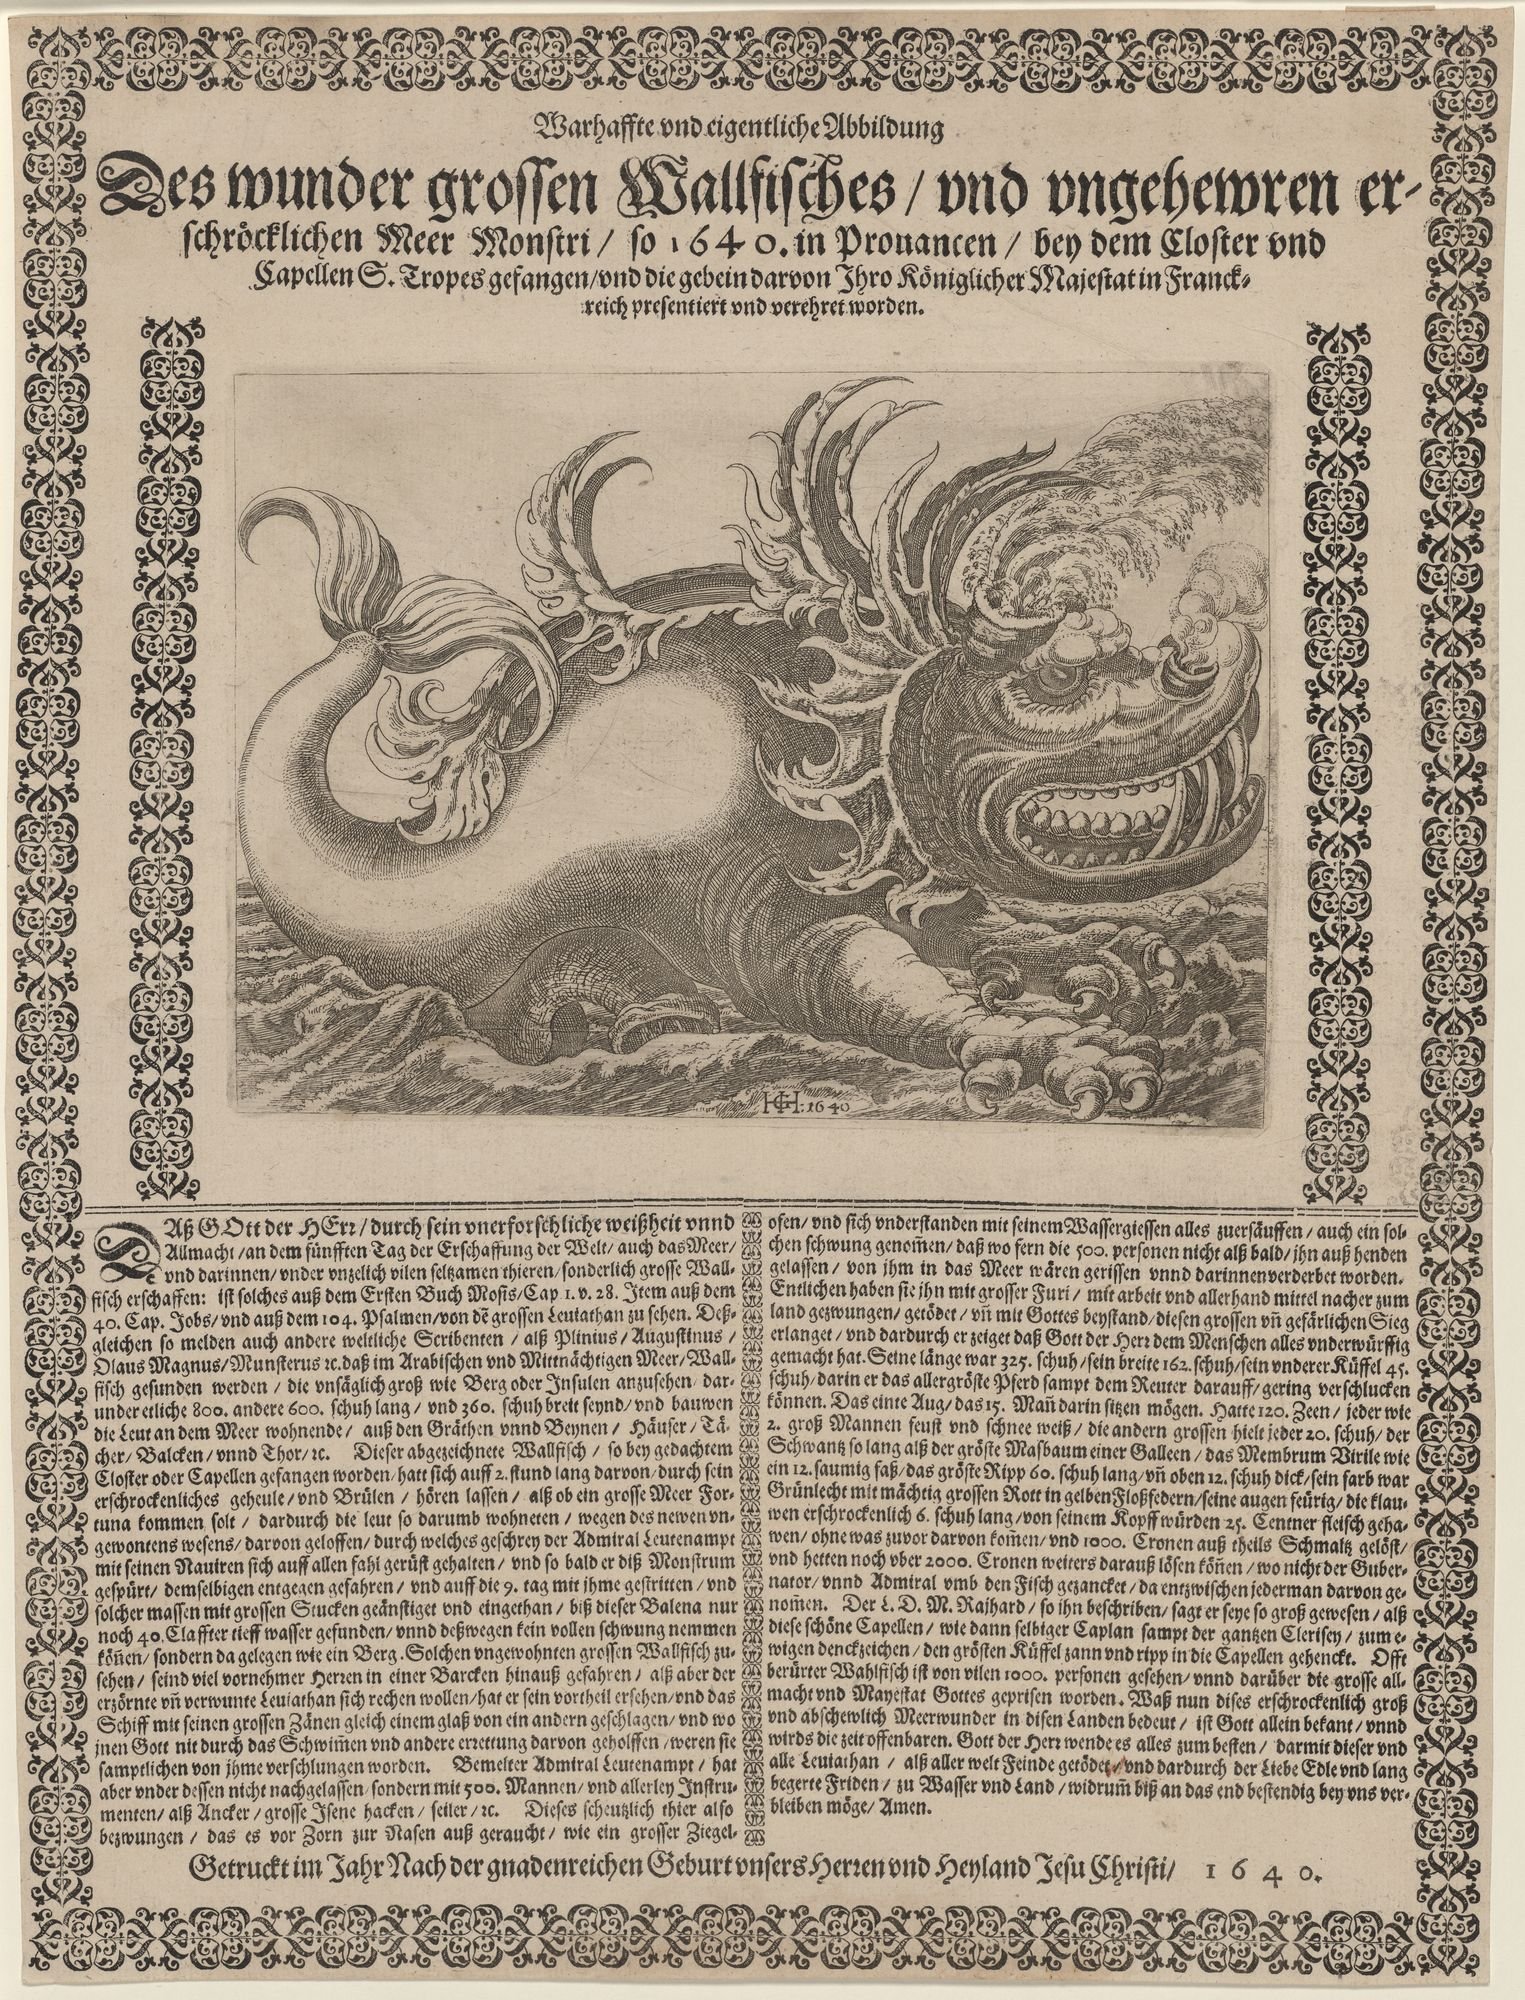 Warhaffte und eigentliche Abbildung Des wunder grossen Wallfisches (Kulturstiftung Sachsen-Anhalt Public Domain Mark)